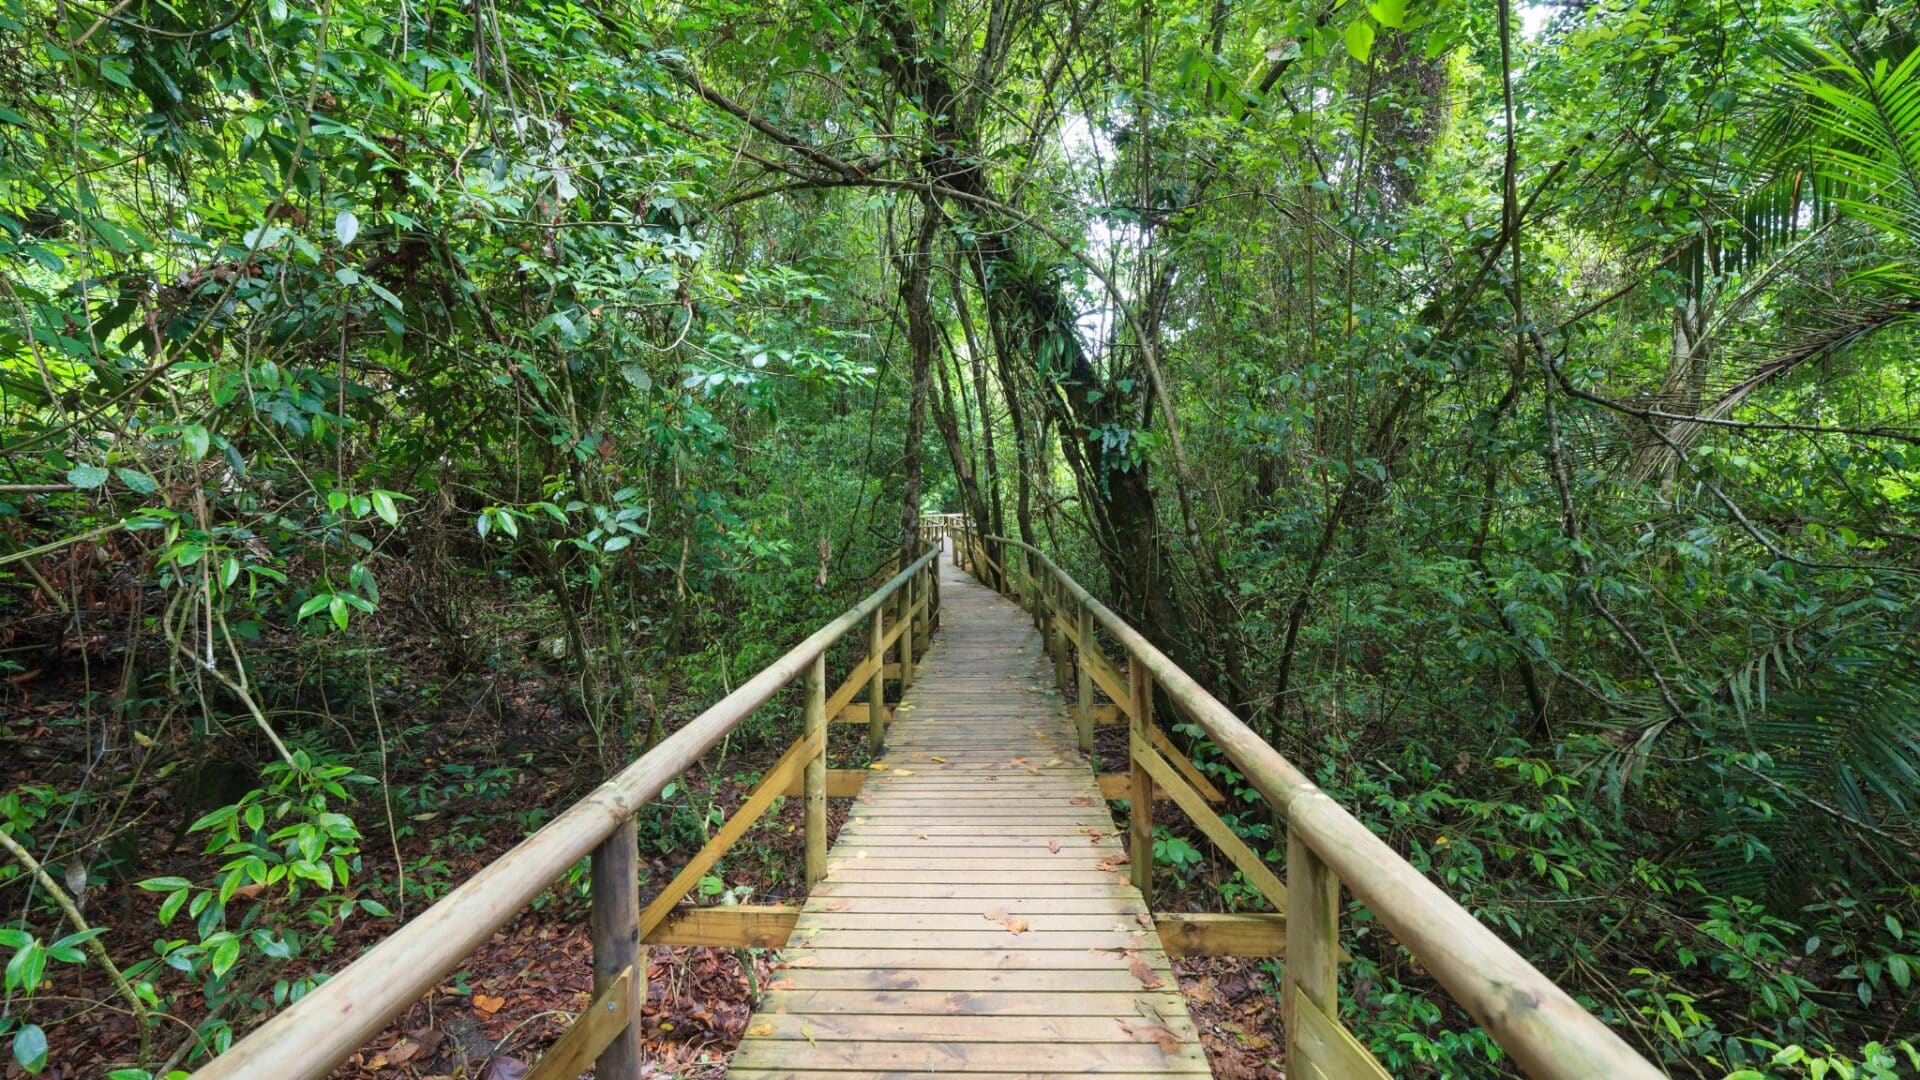 Jungle path in Costa Rica